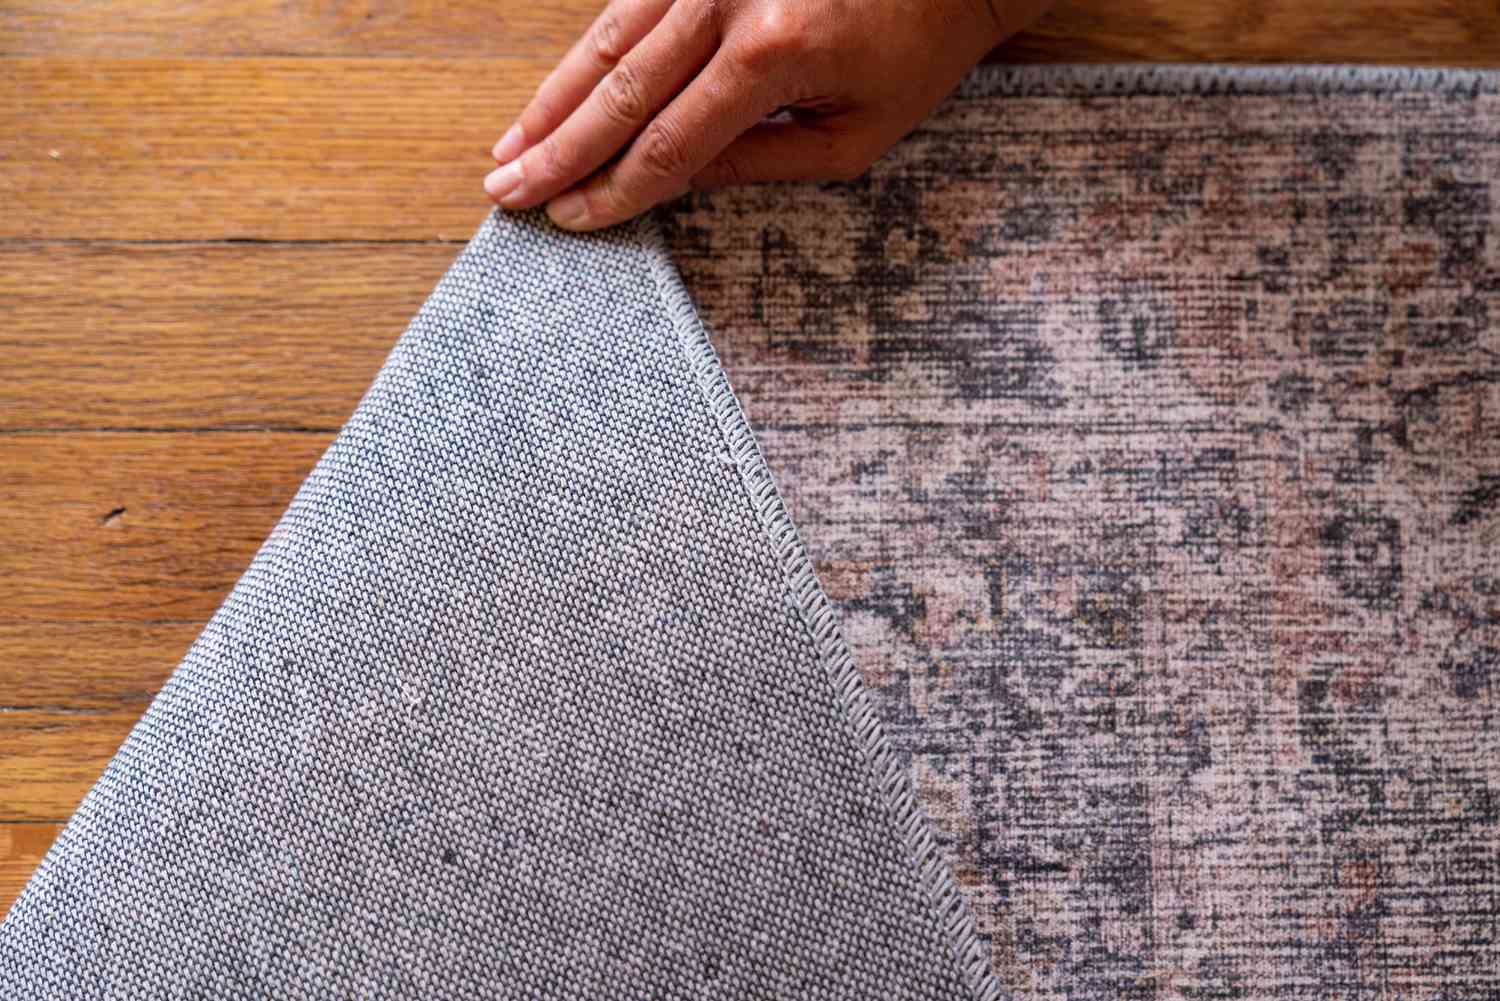 Hellrosa, hellbrauner und grauer handgetufteter Teppich, der umgedreht wird, um das maschinelle und handgefertigte Muster zu zeigen